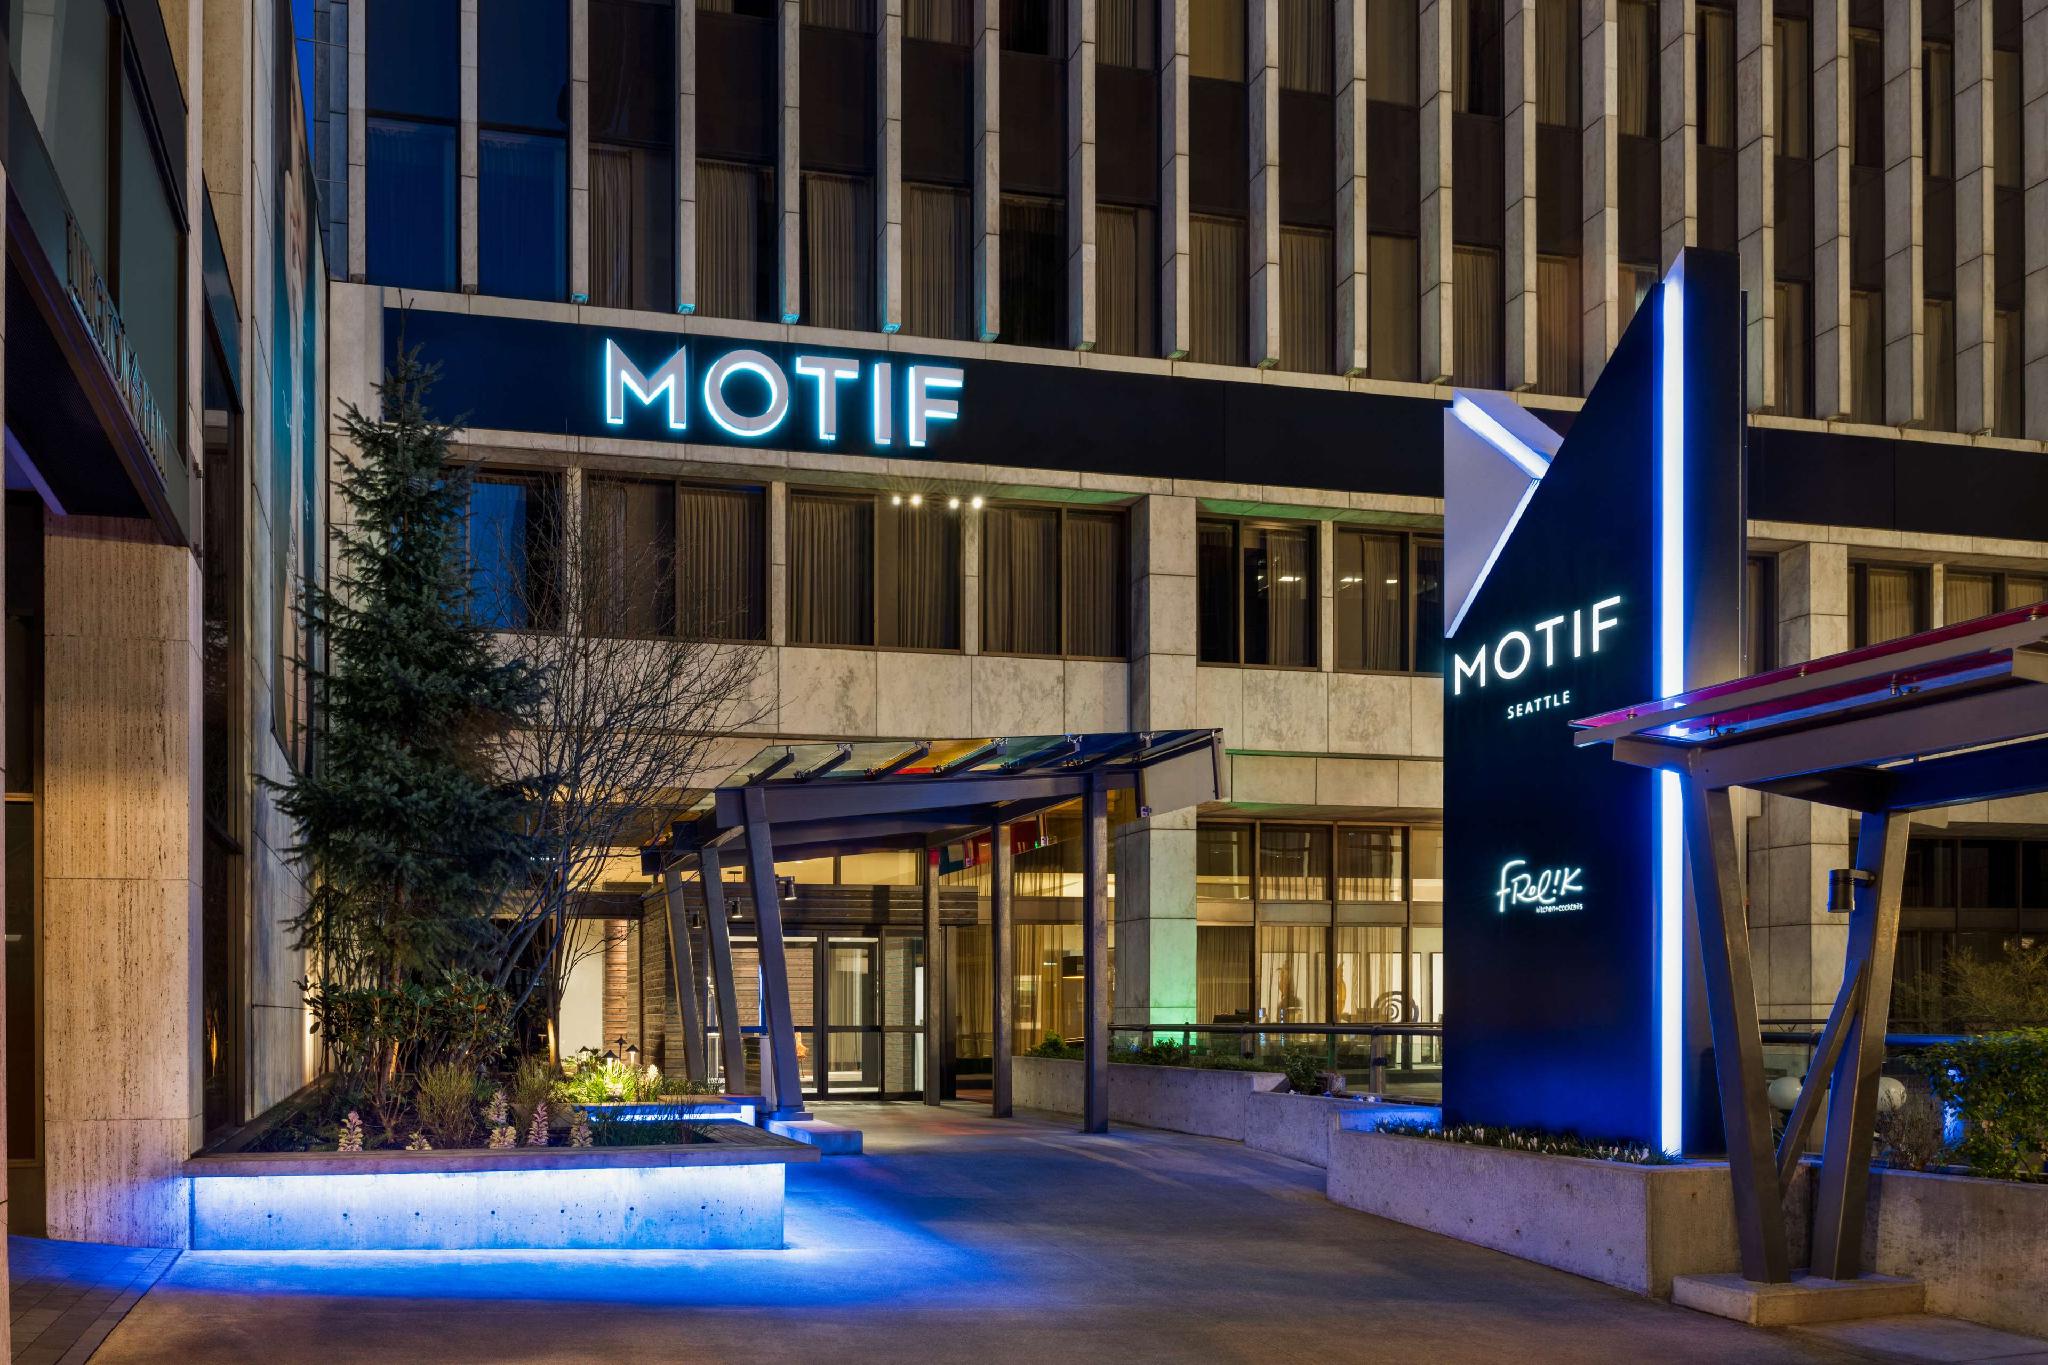 Hilton Motif Seattle 写真